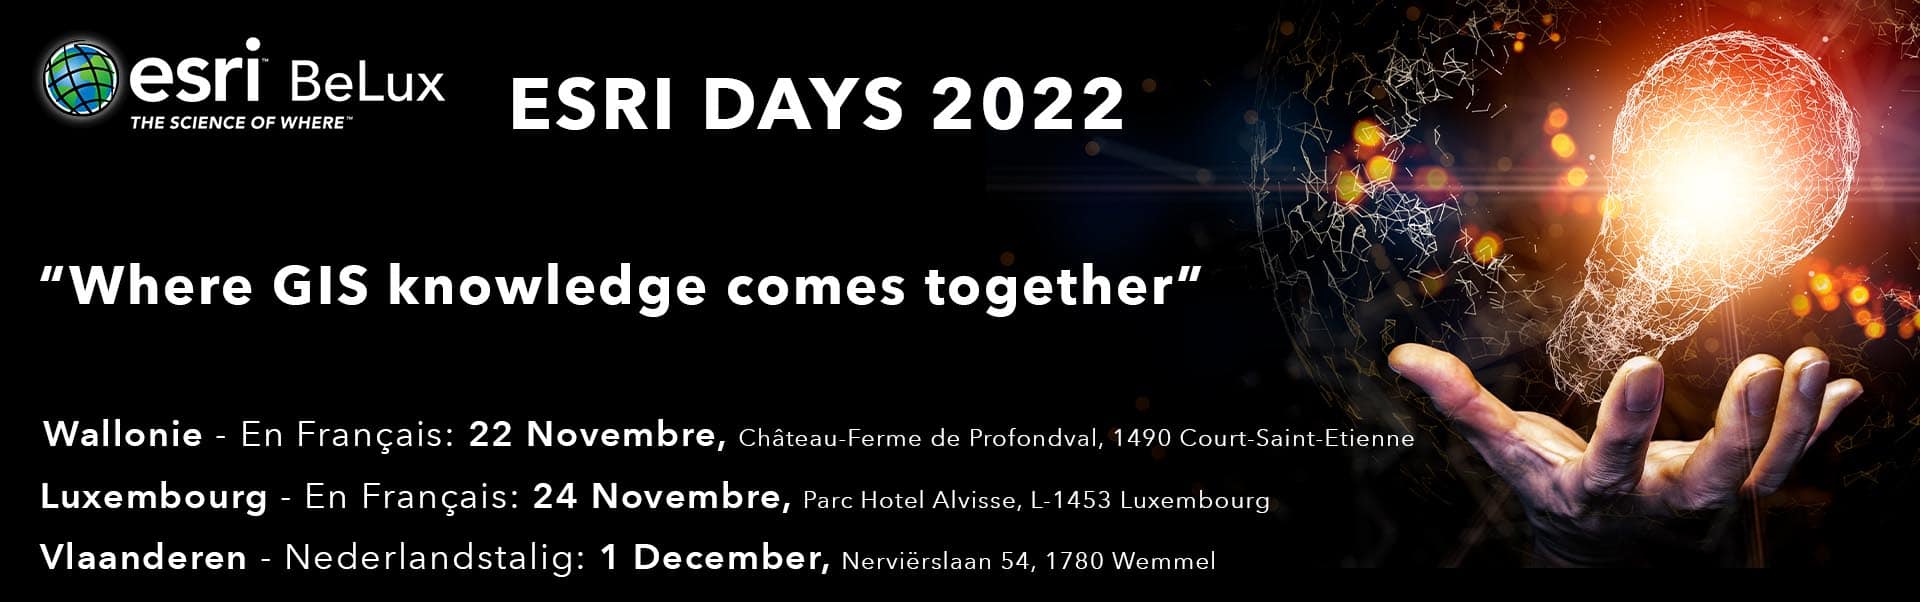 Website banner - Esri Days 2022